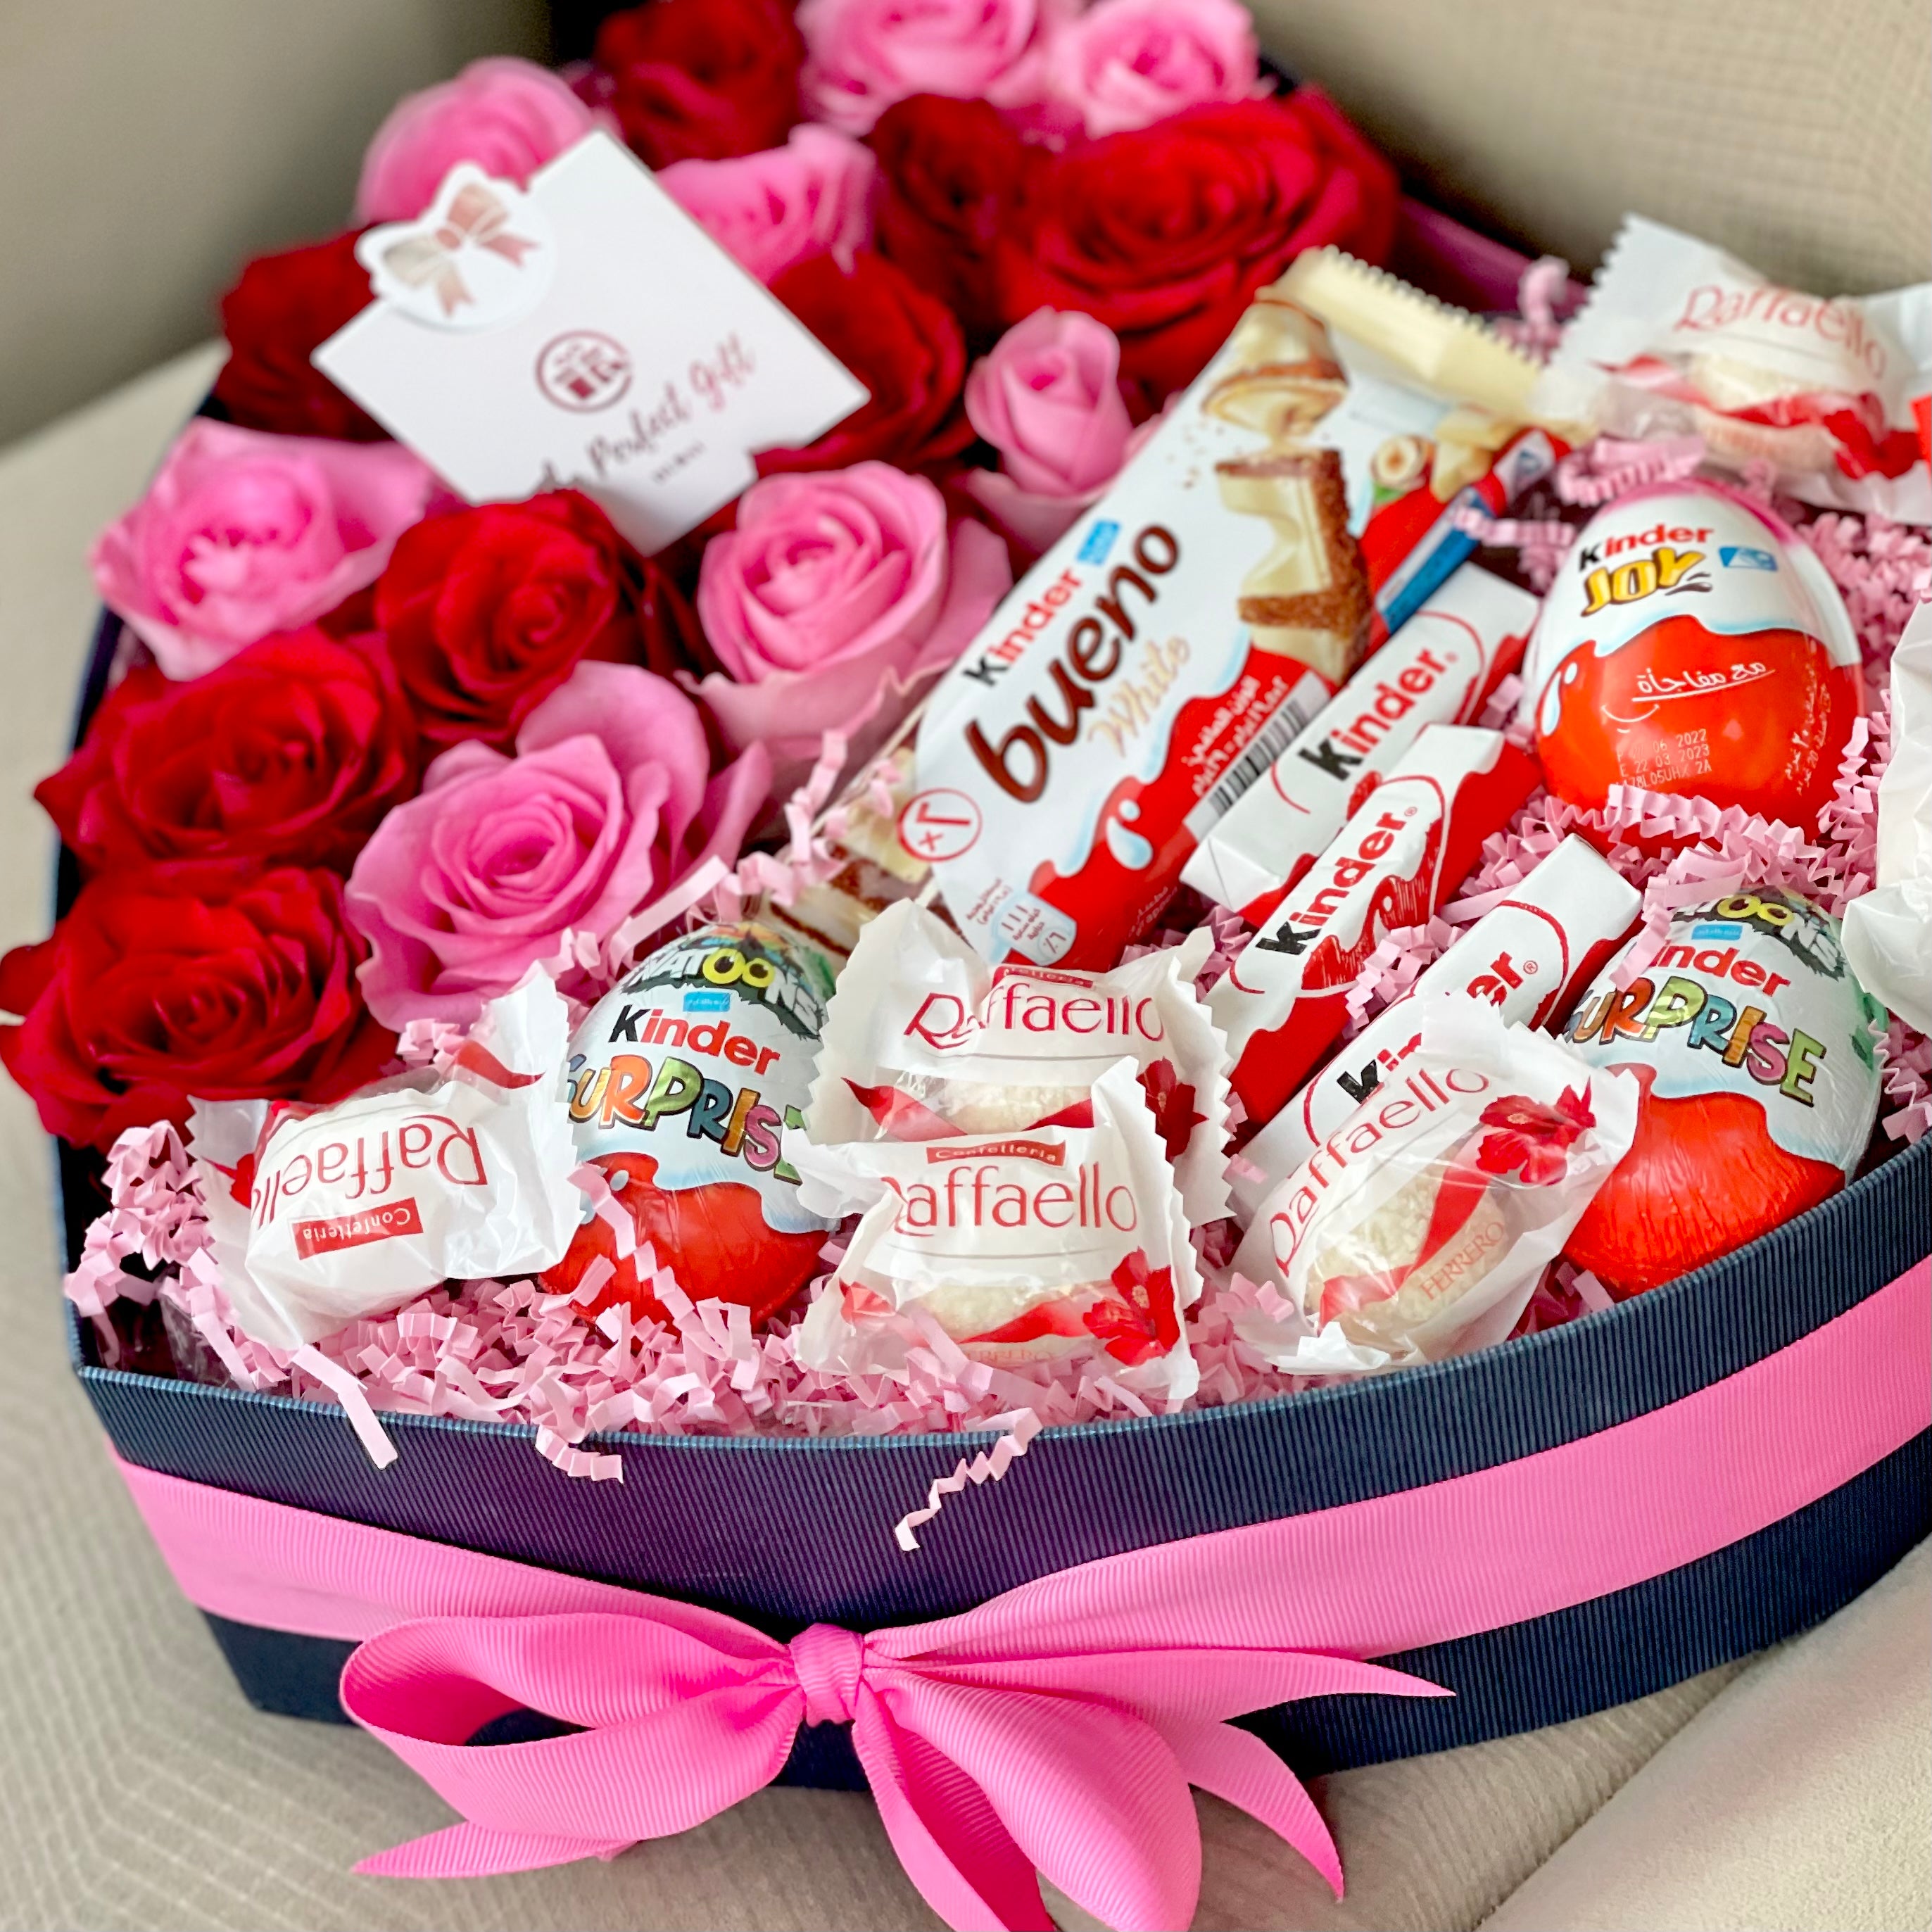 Roses & Chocolate Heart - Livraison de cadeaux aux EAU - Achetez